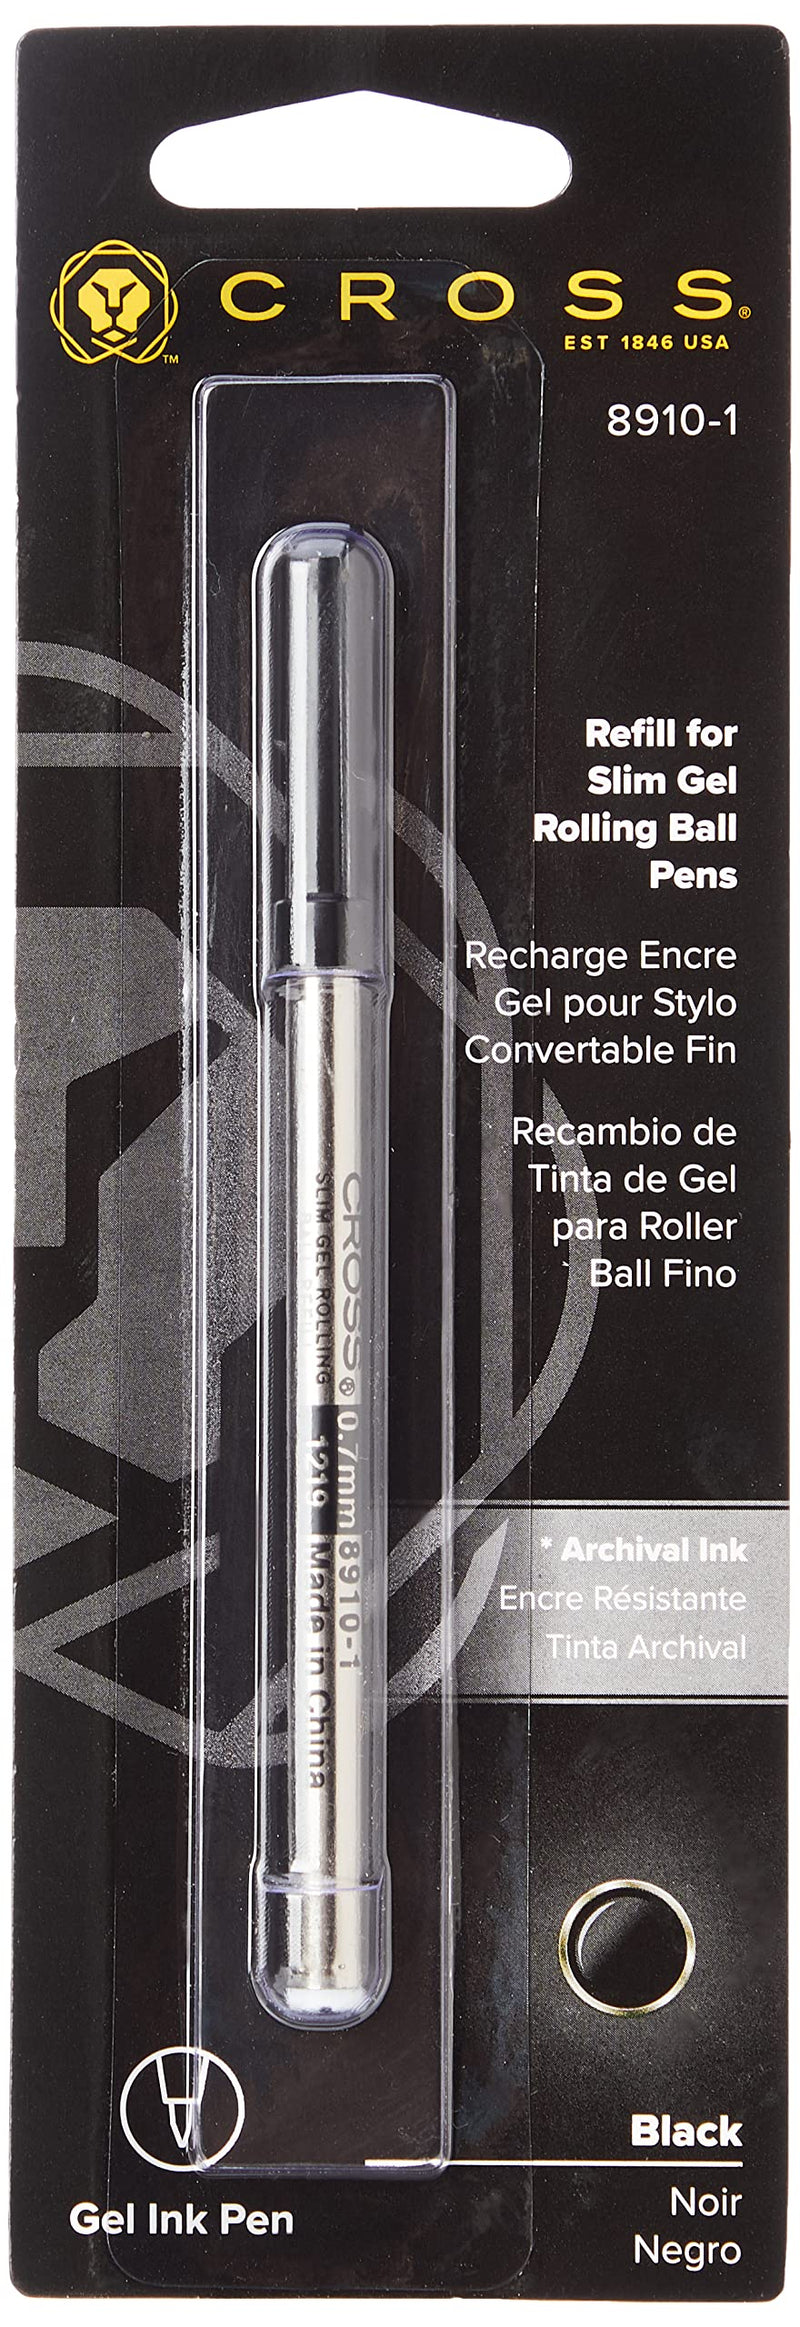 Cross Slim Gel Rollerball Pen Refill, Click Pens, Black, 